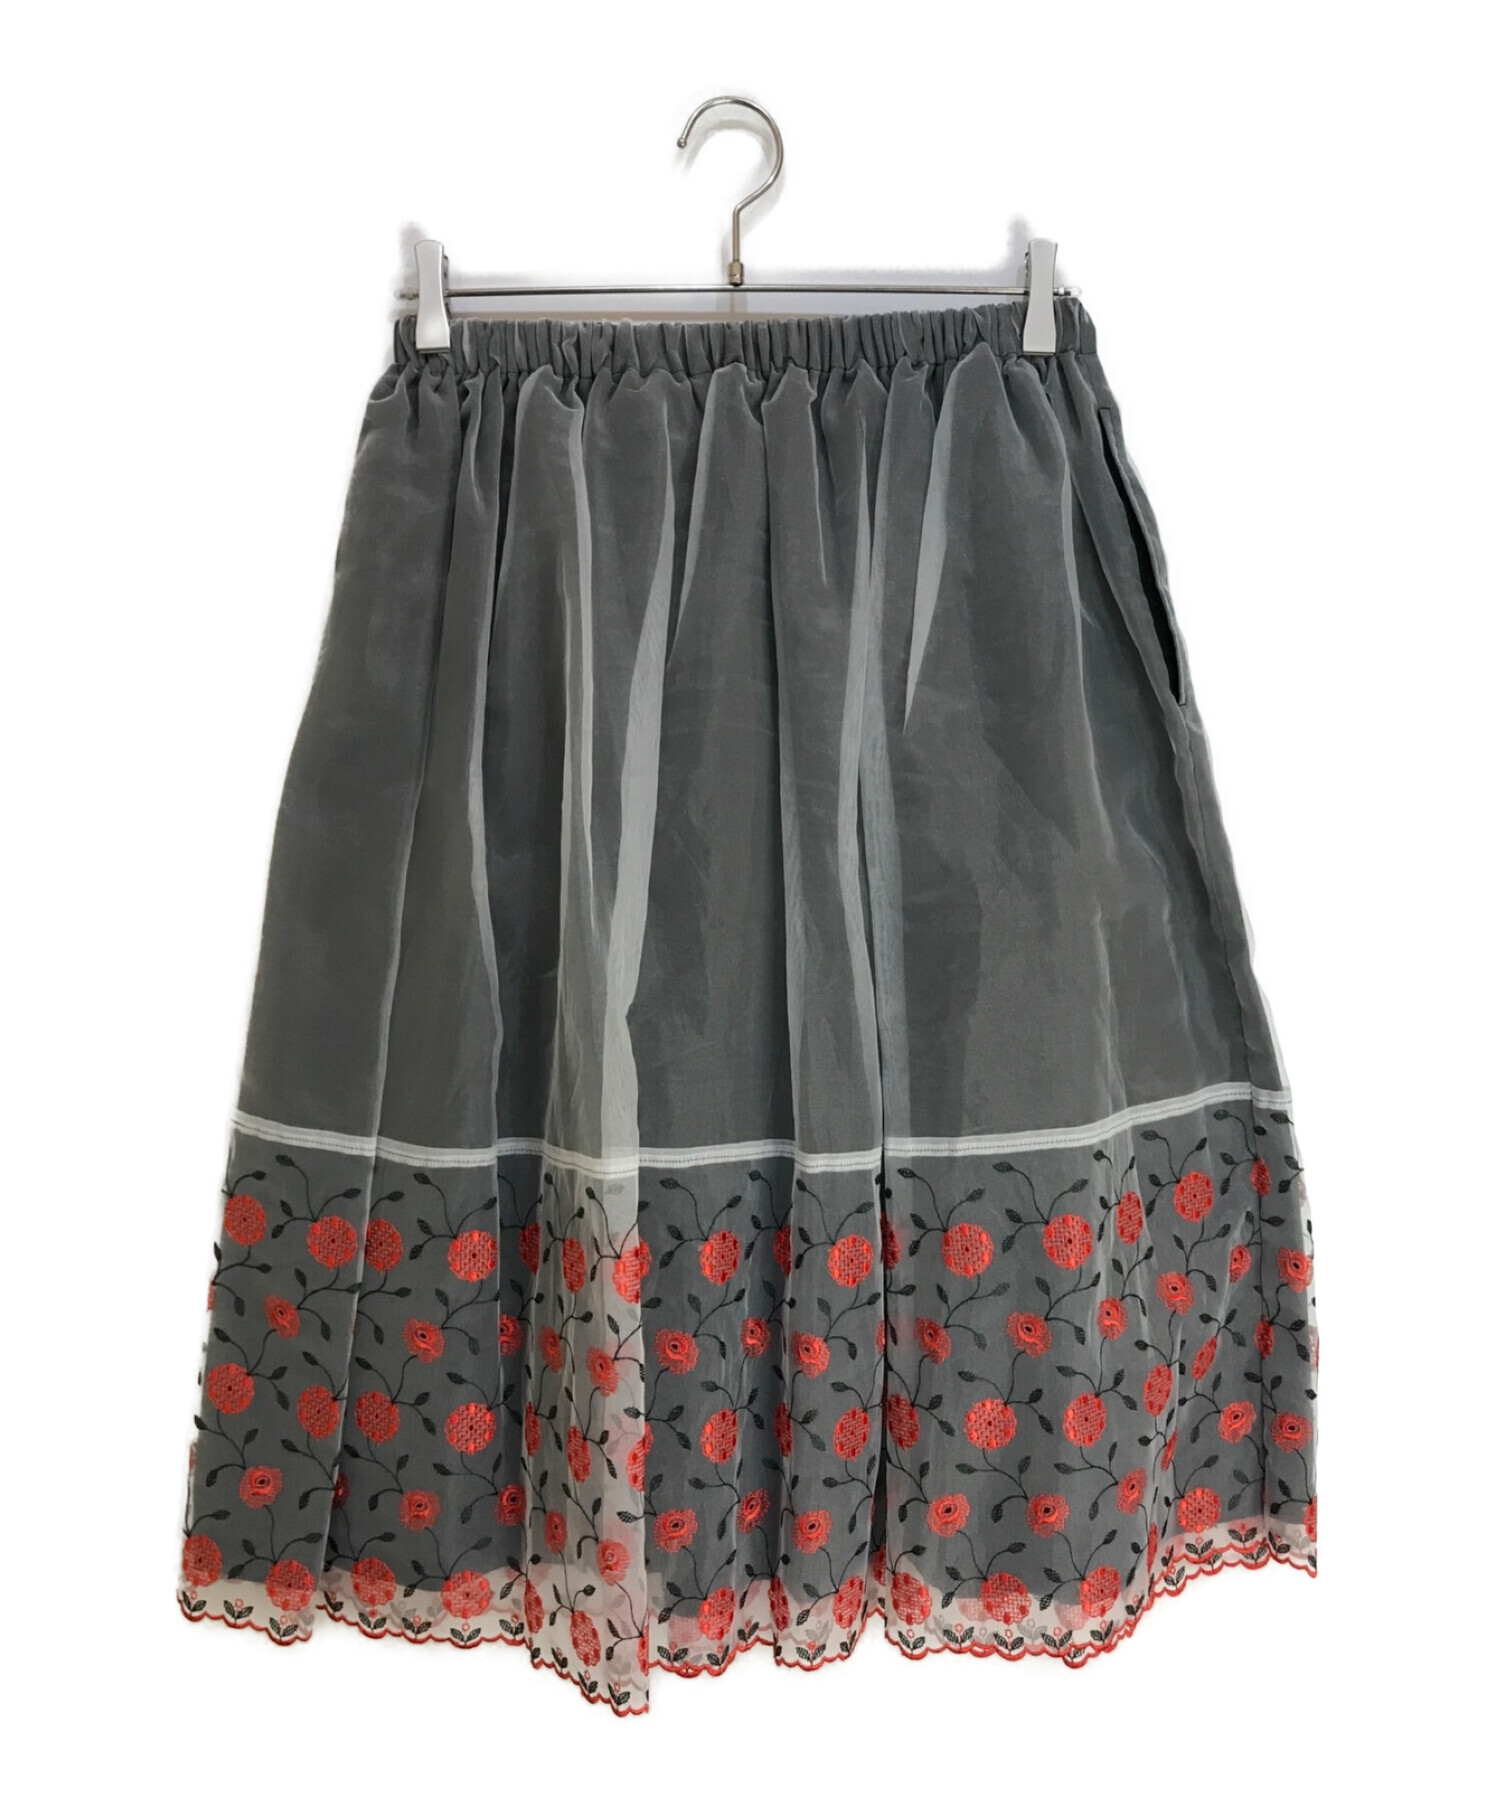 【お値下げ可】tricot COMME des GARCONS 刺繍スカート材質ポリエステル100%